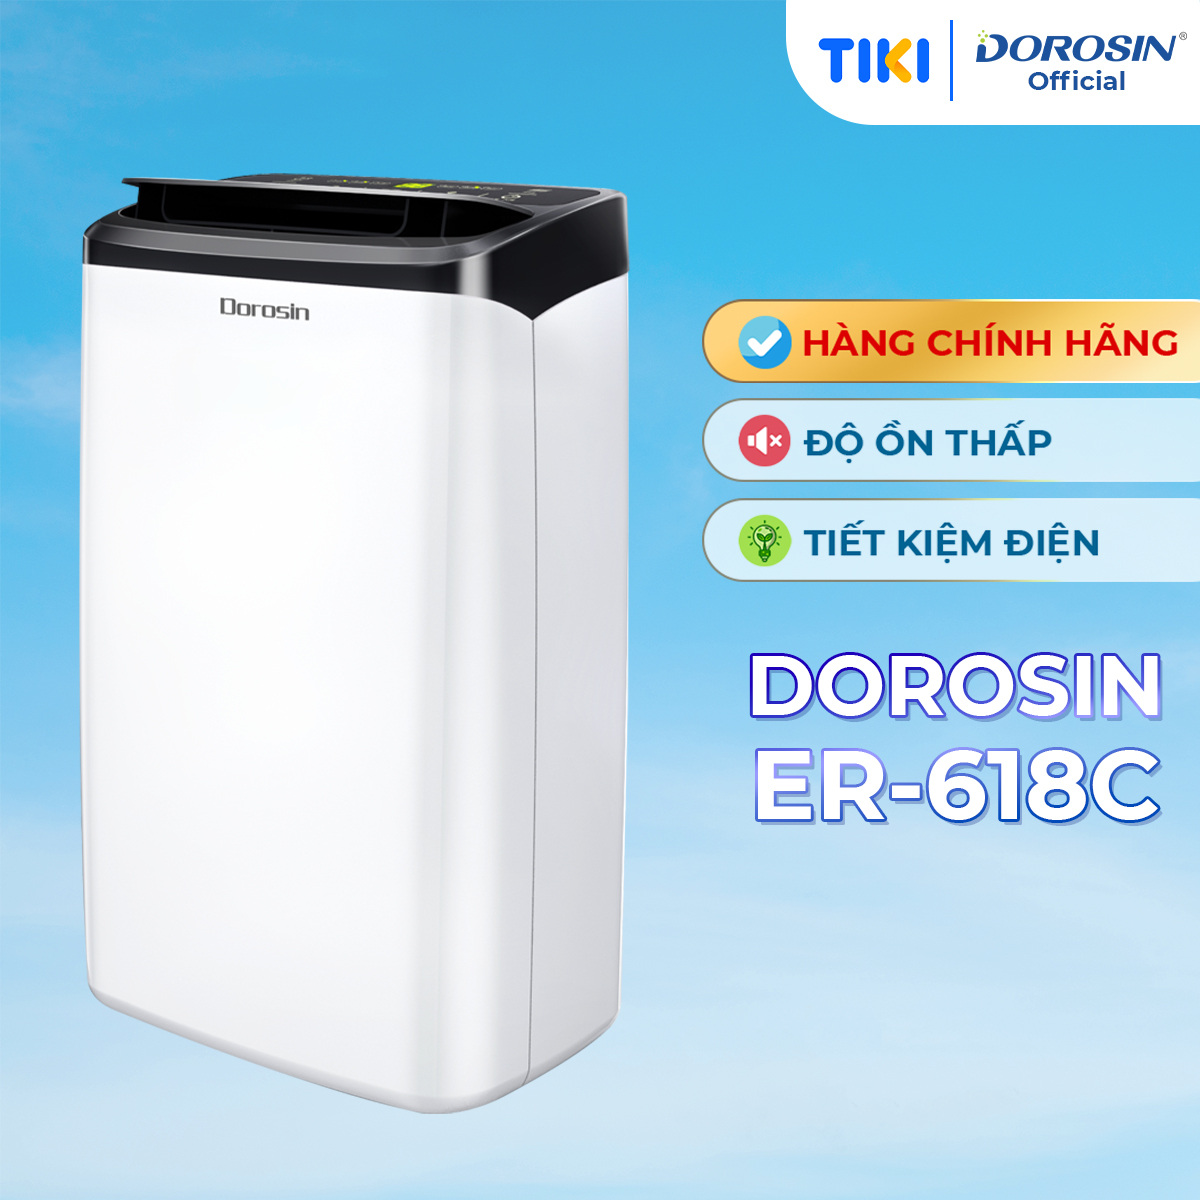 Máy hút ẩm gia dụng chính hãng Dorosin 618C 40m2Công suất hút ẩm 18 lít ngày - Cảm biến điện tử thông minh - Độ ồn thấp